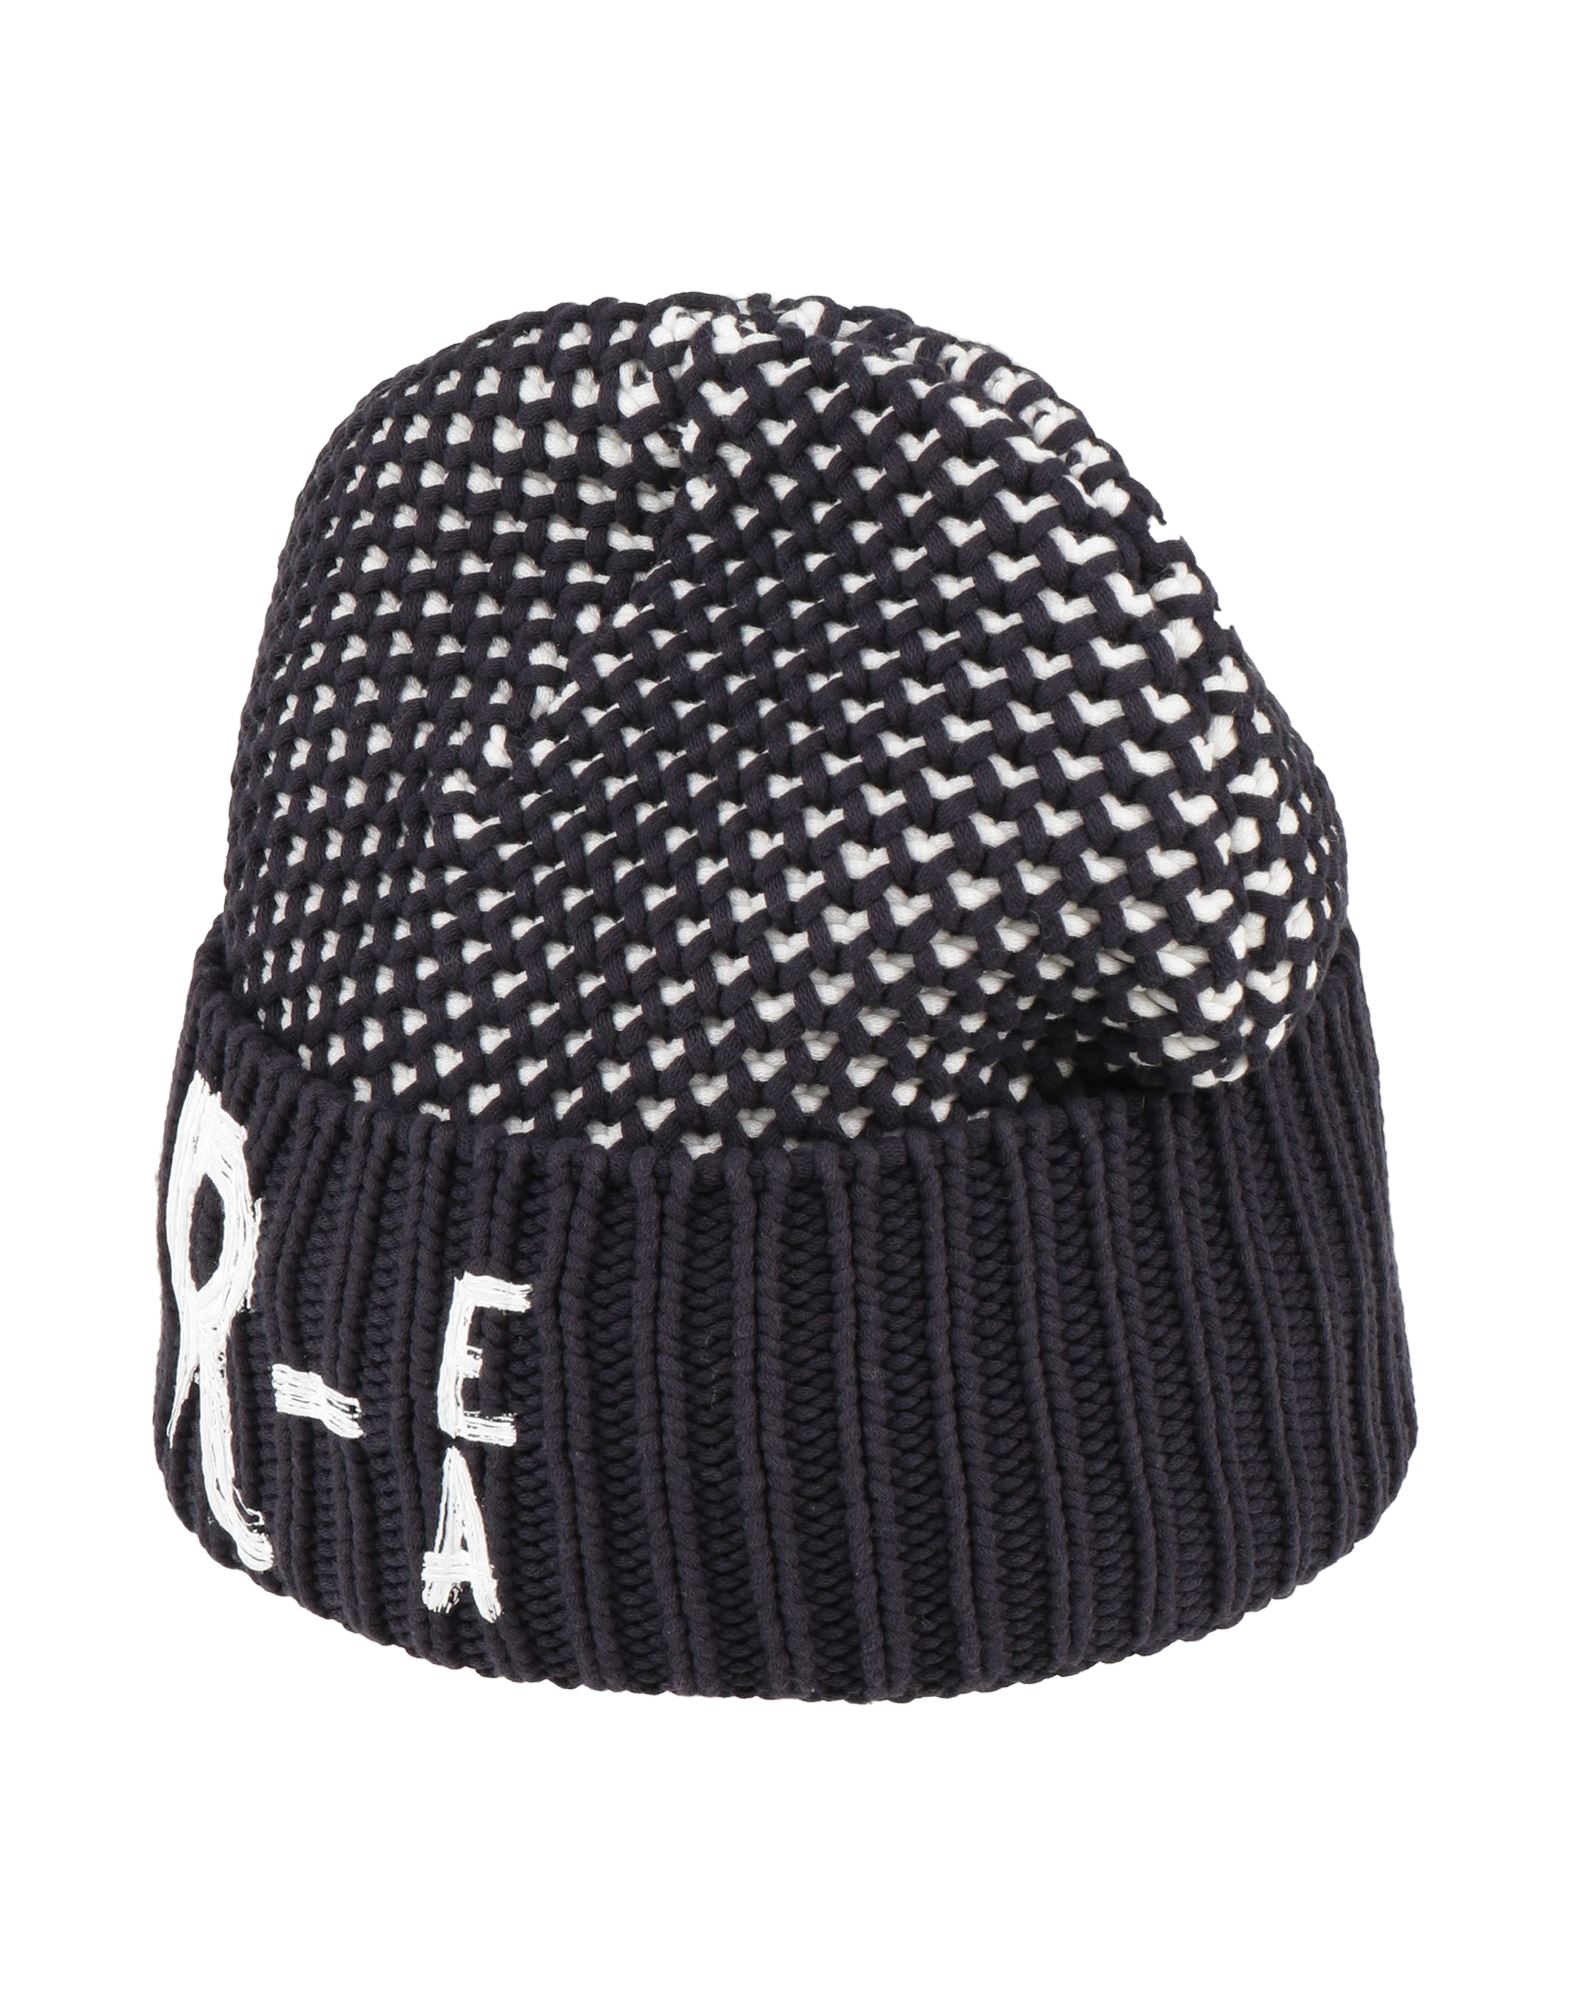 エンポリオアルマーニ(EMPORIO ARMANI) メンズ帽子・キャップ | 通販